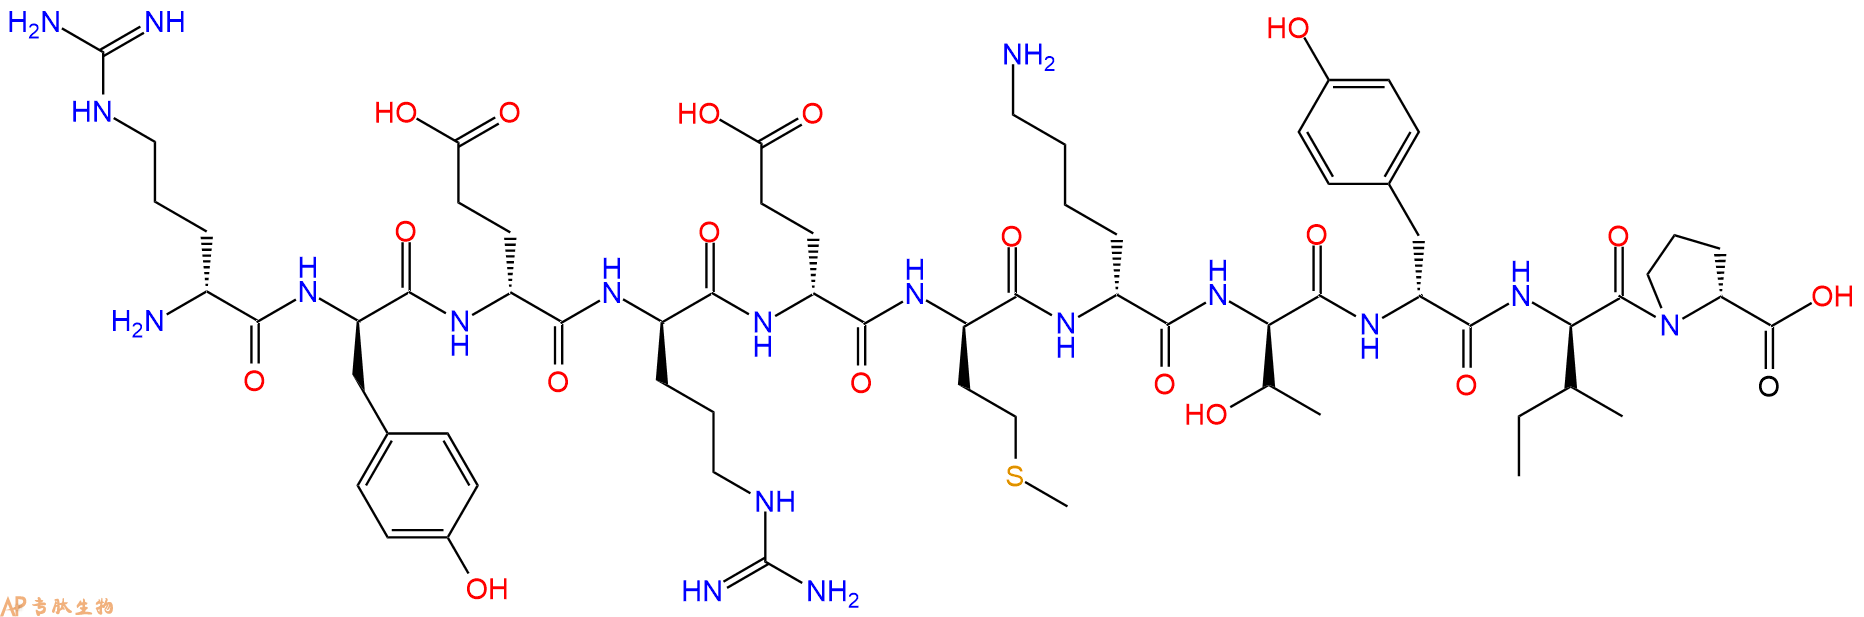 专肽生物产品H2N-DArg-DTyr-DGlu-DArg-DGlu-DMet-DLys-DThr-DTyr-D